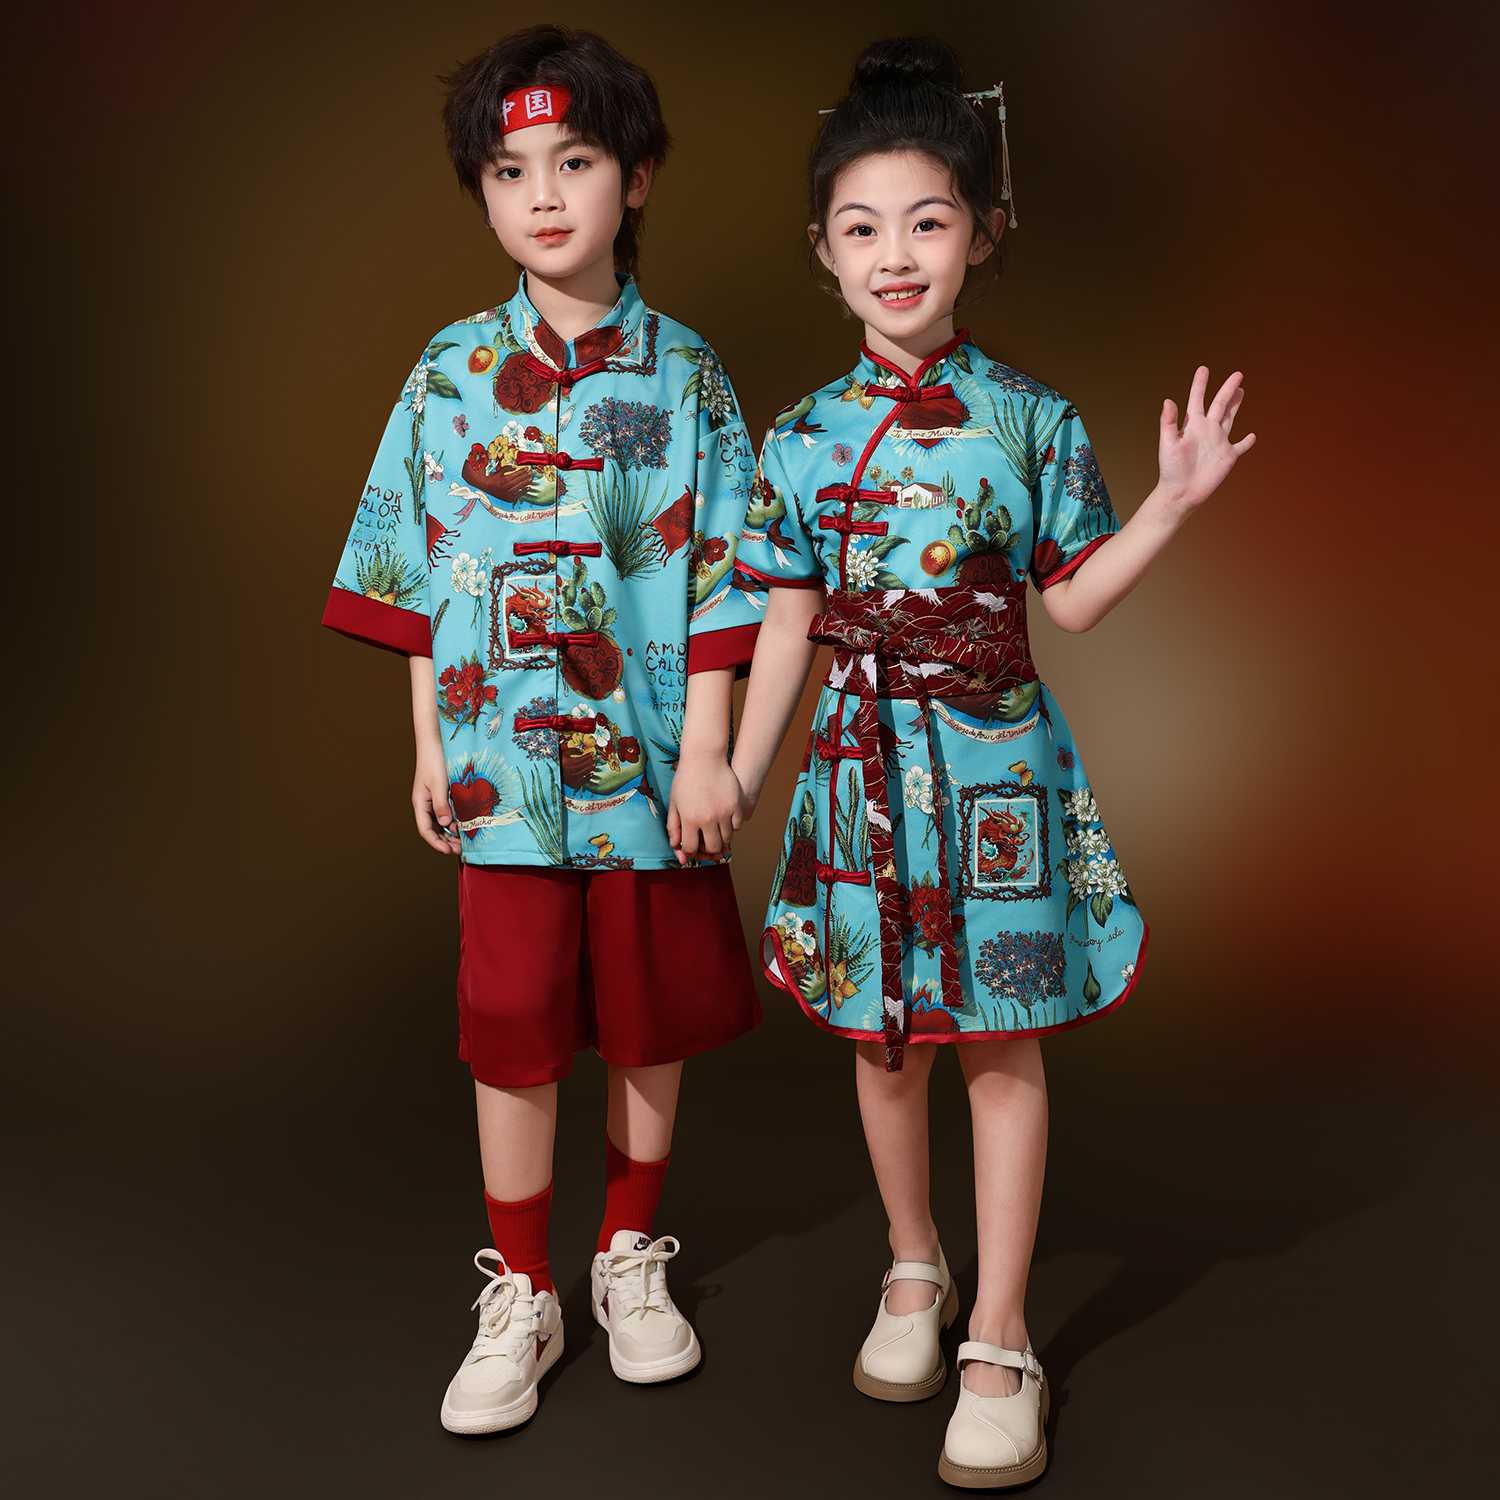 儿童演出服中国风女童汉服旗袍男童中式唐装舞台走秀儿童表演服装